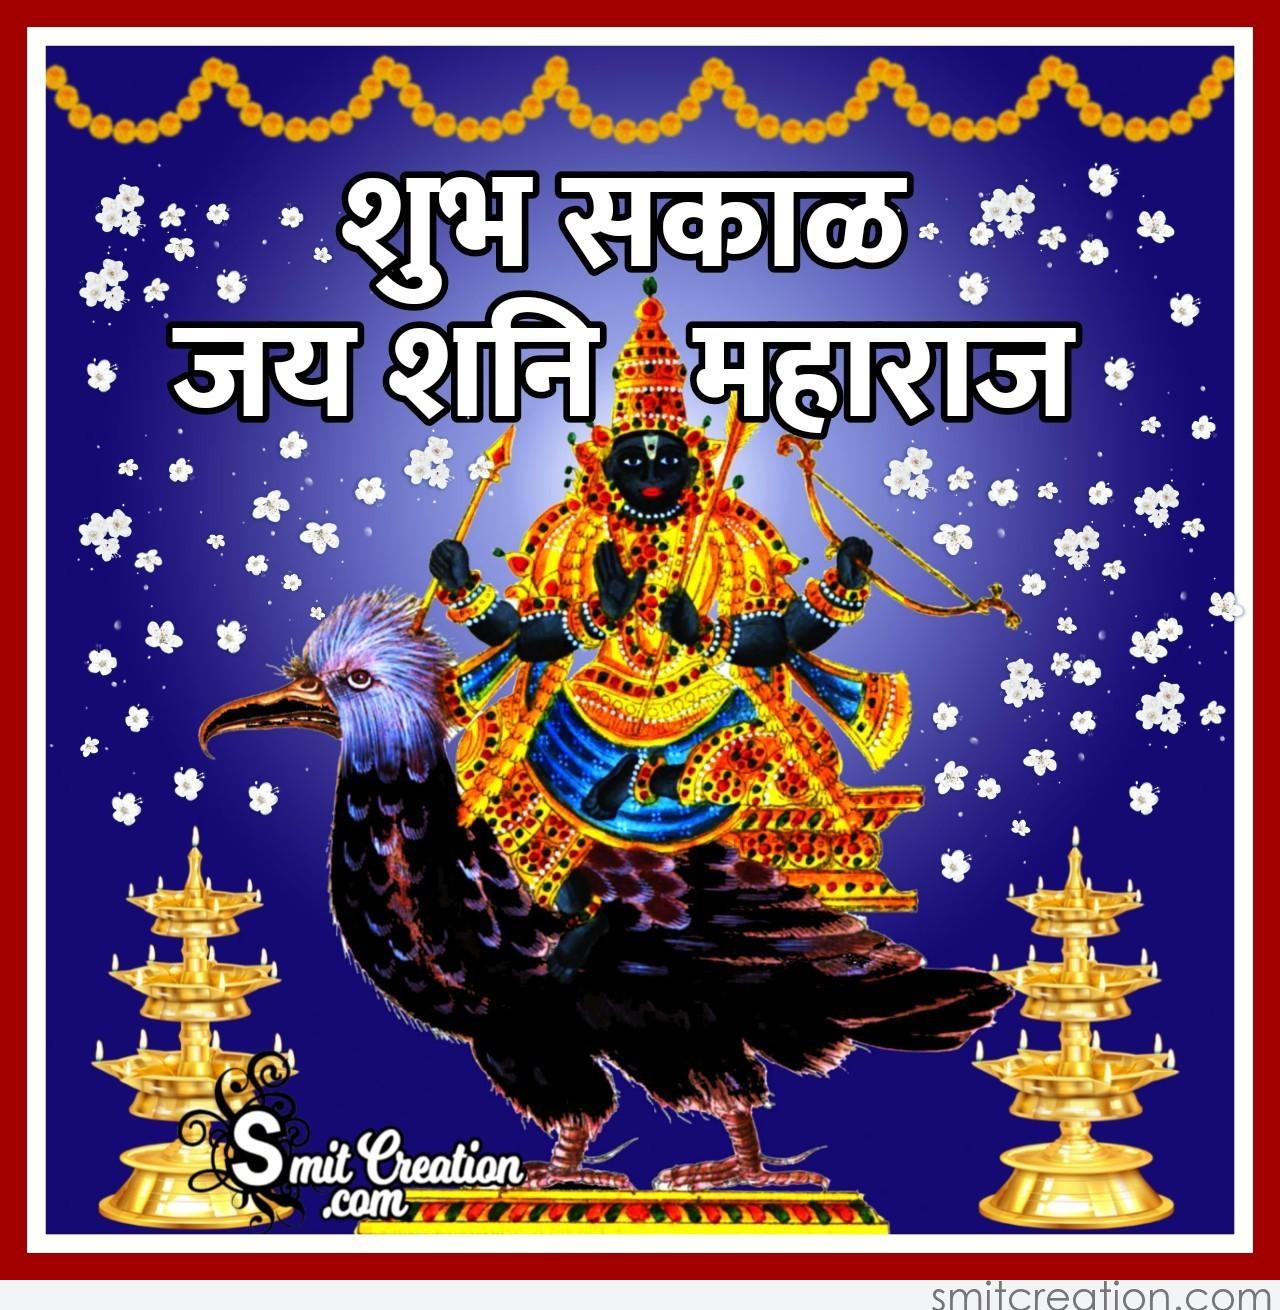 Shubh Sakal Jai Shani Maharaj Smitcreation Com